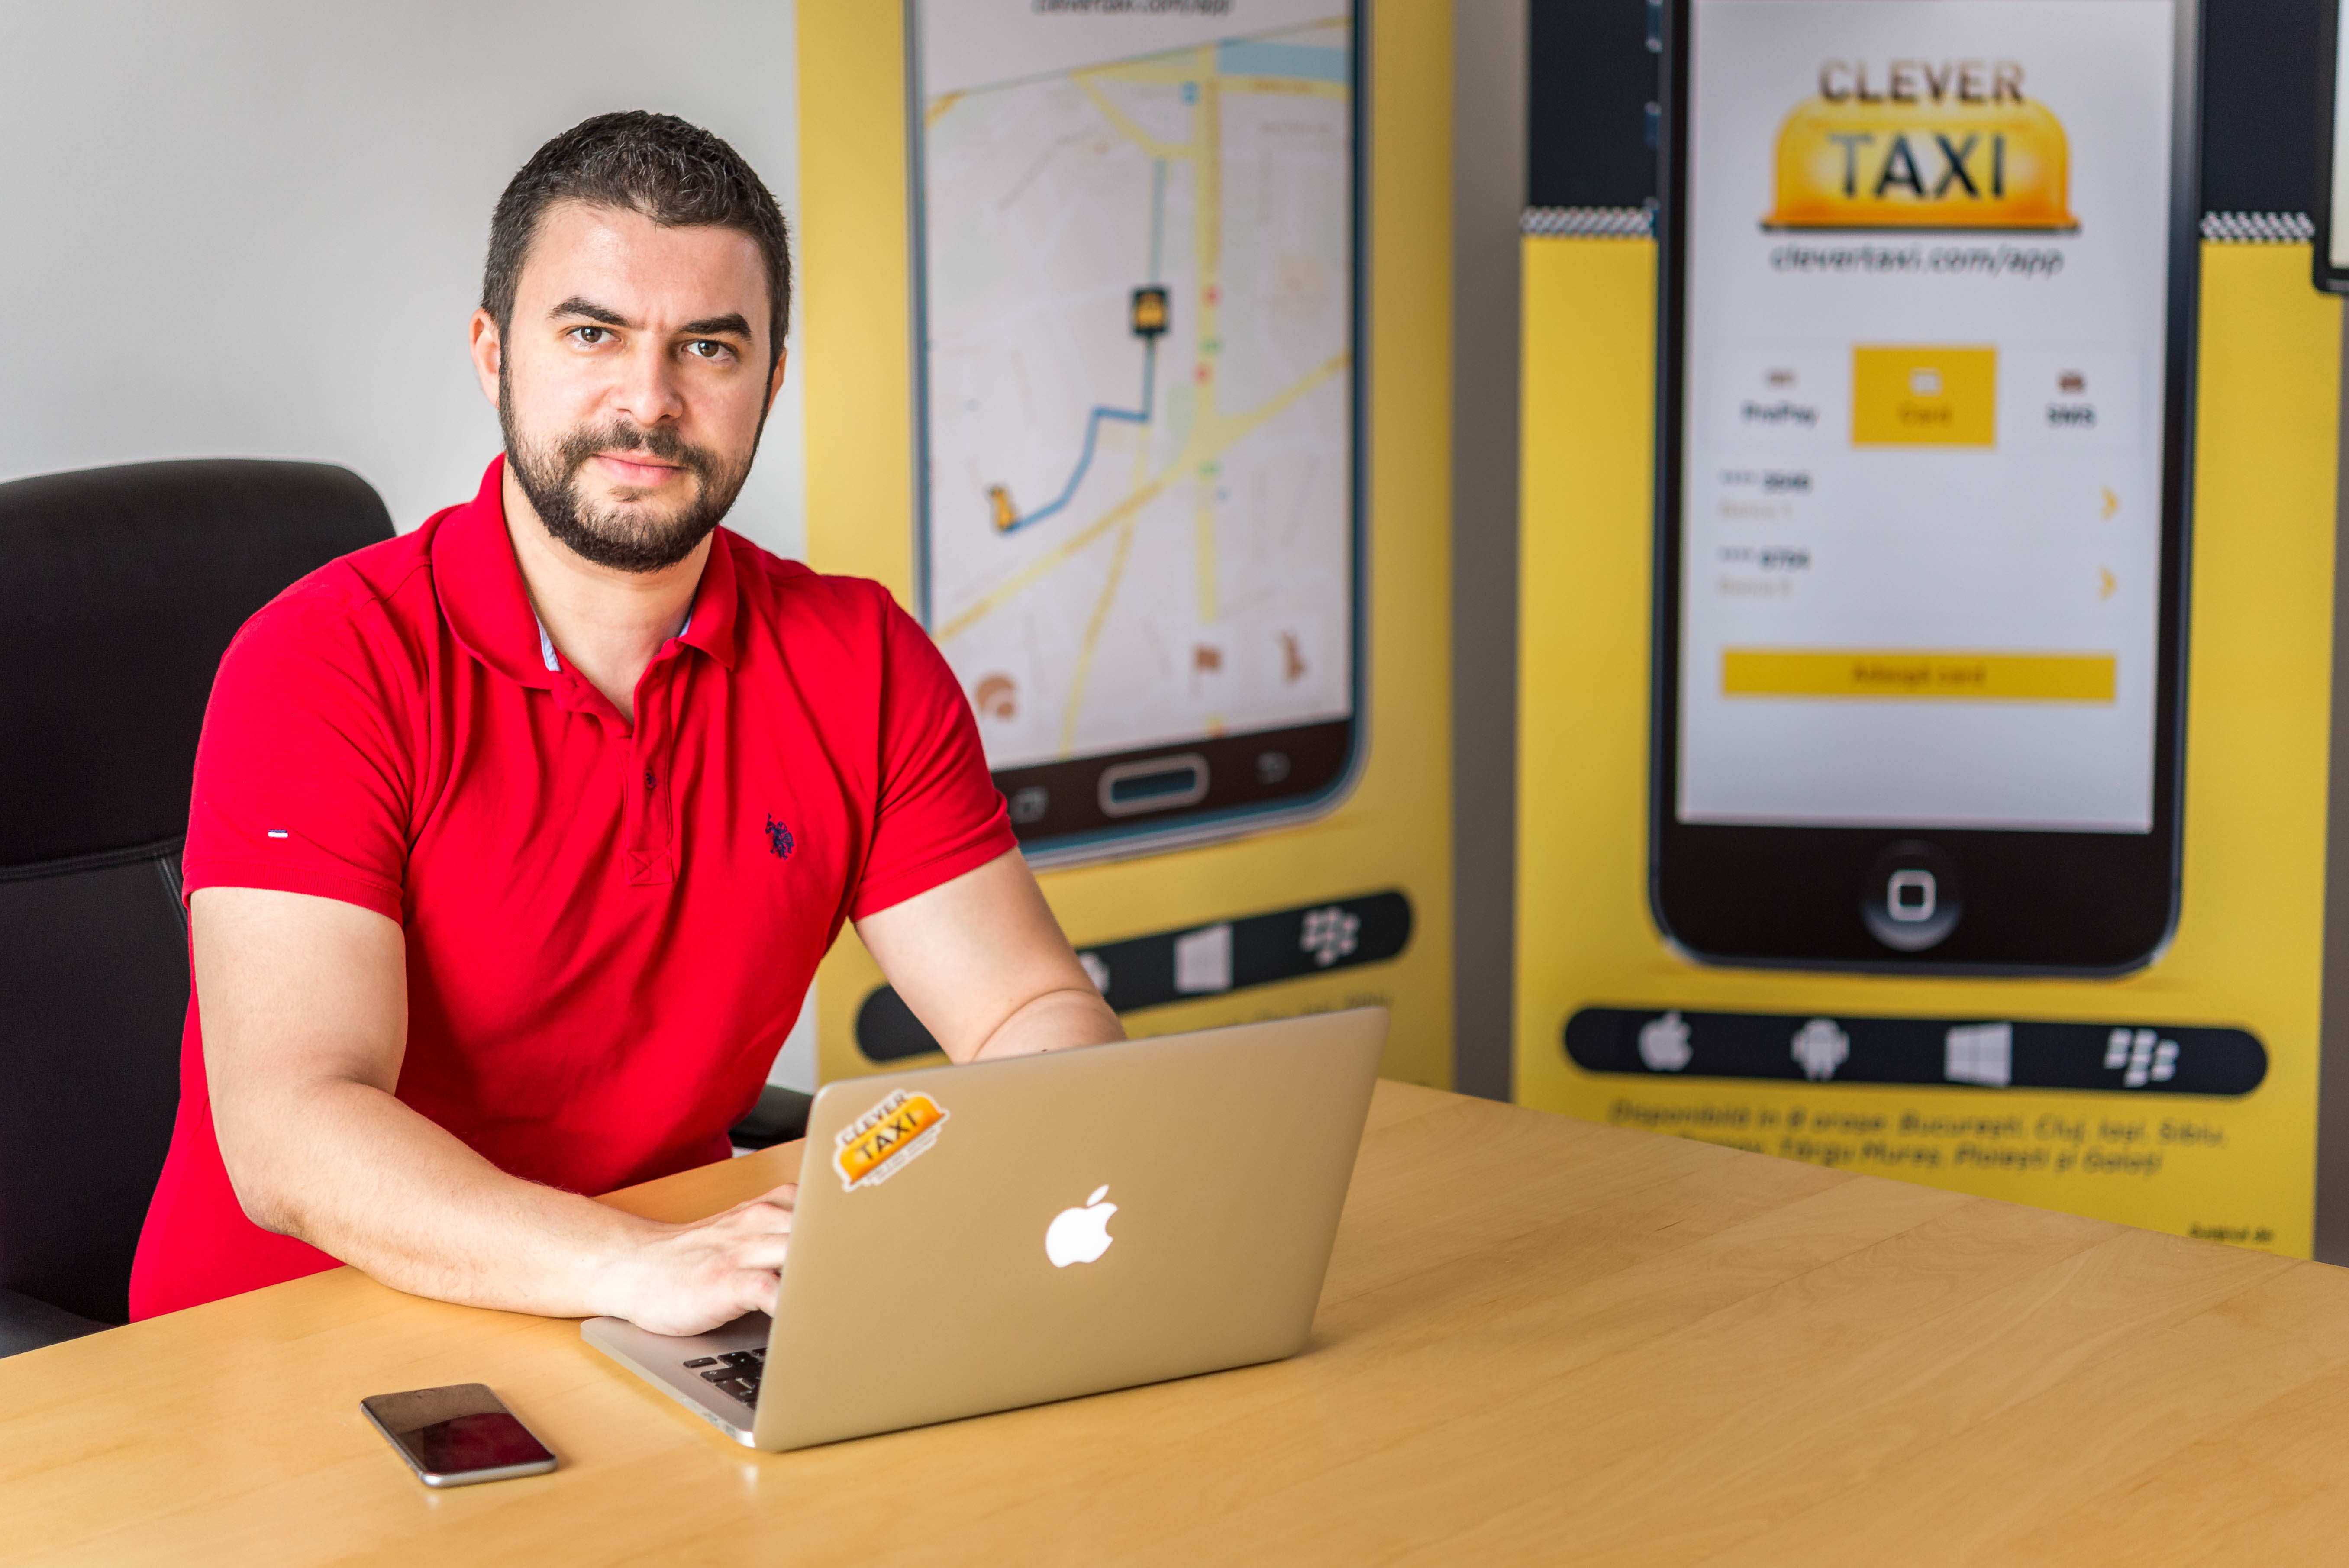 comfort Deserve See through Clever Taxi susține realizarea unui studiu de impact despre utilizarea  noilor tehnologii în taximetrie - Piata Financiara